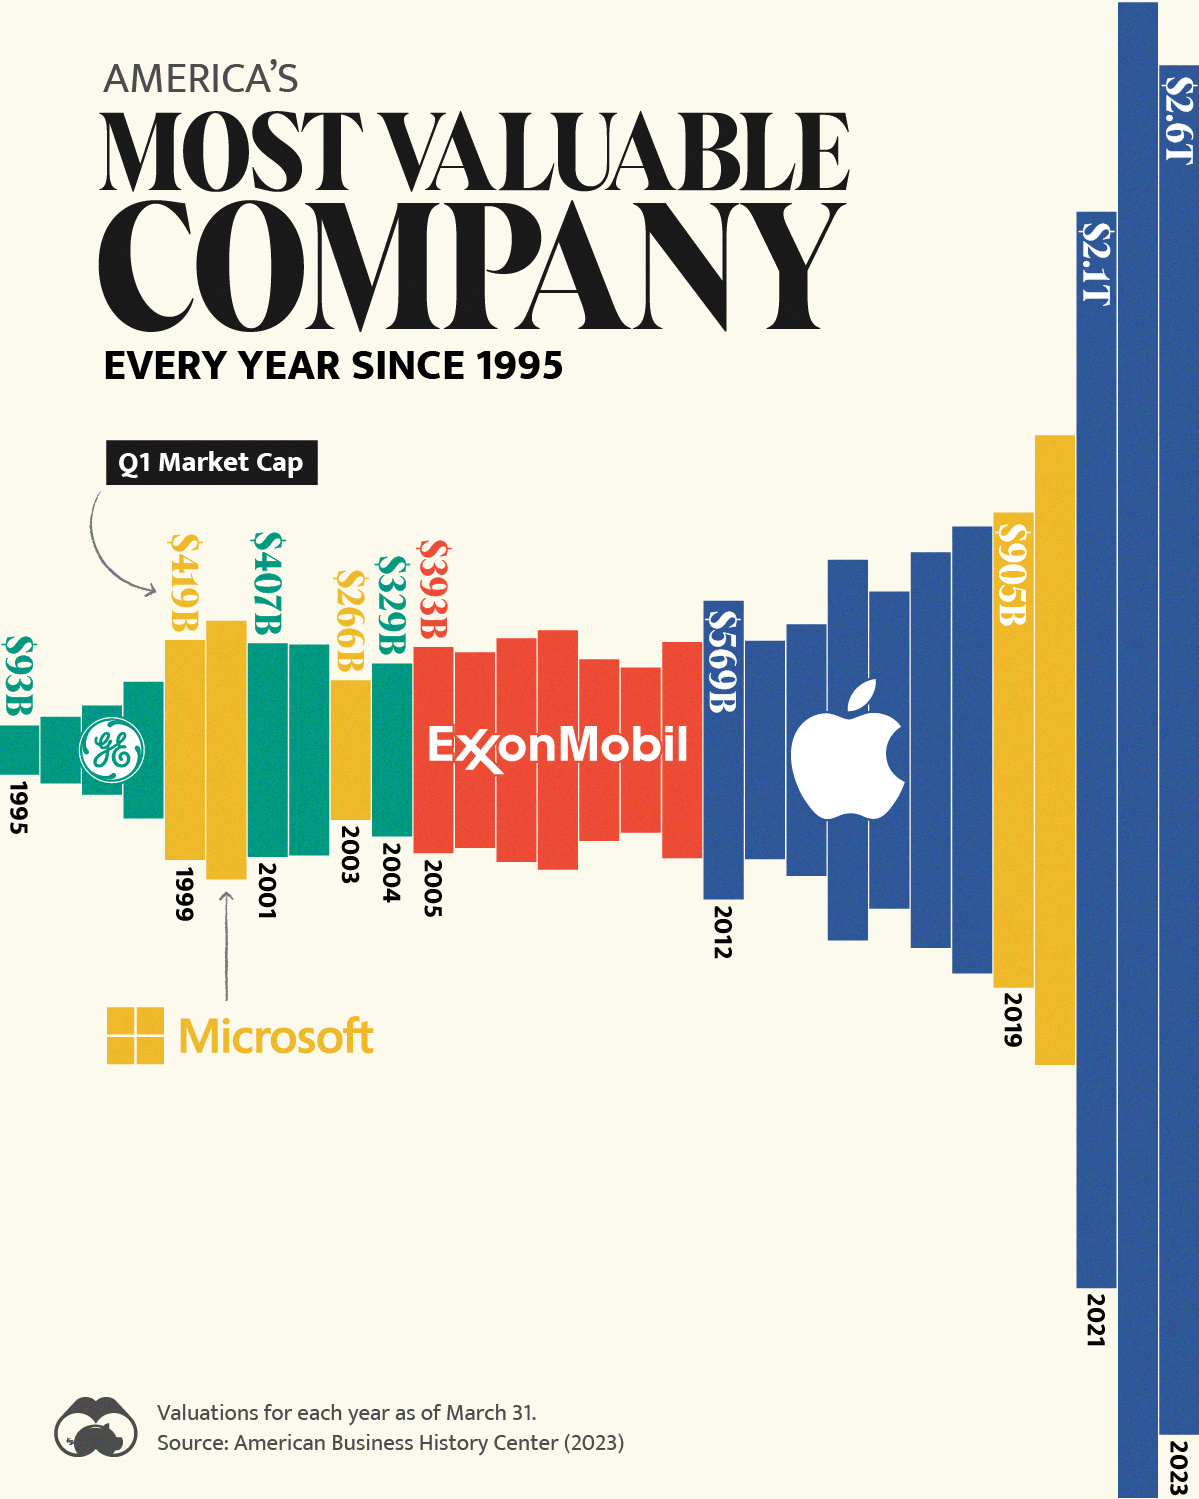 La empresa más grande de EE. UU. cada año desde 1995